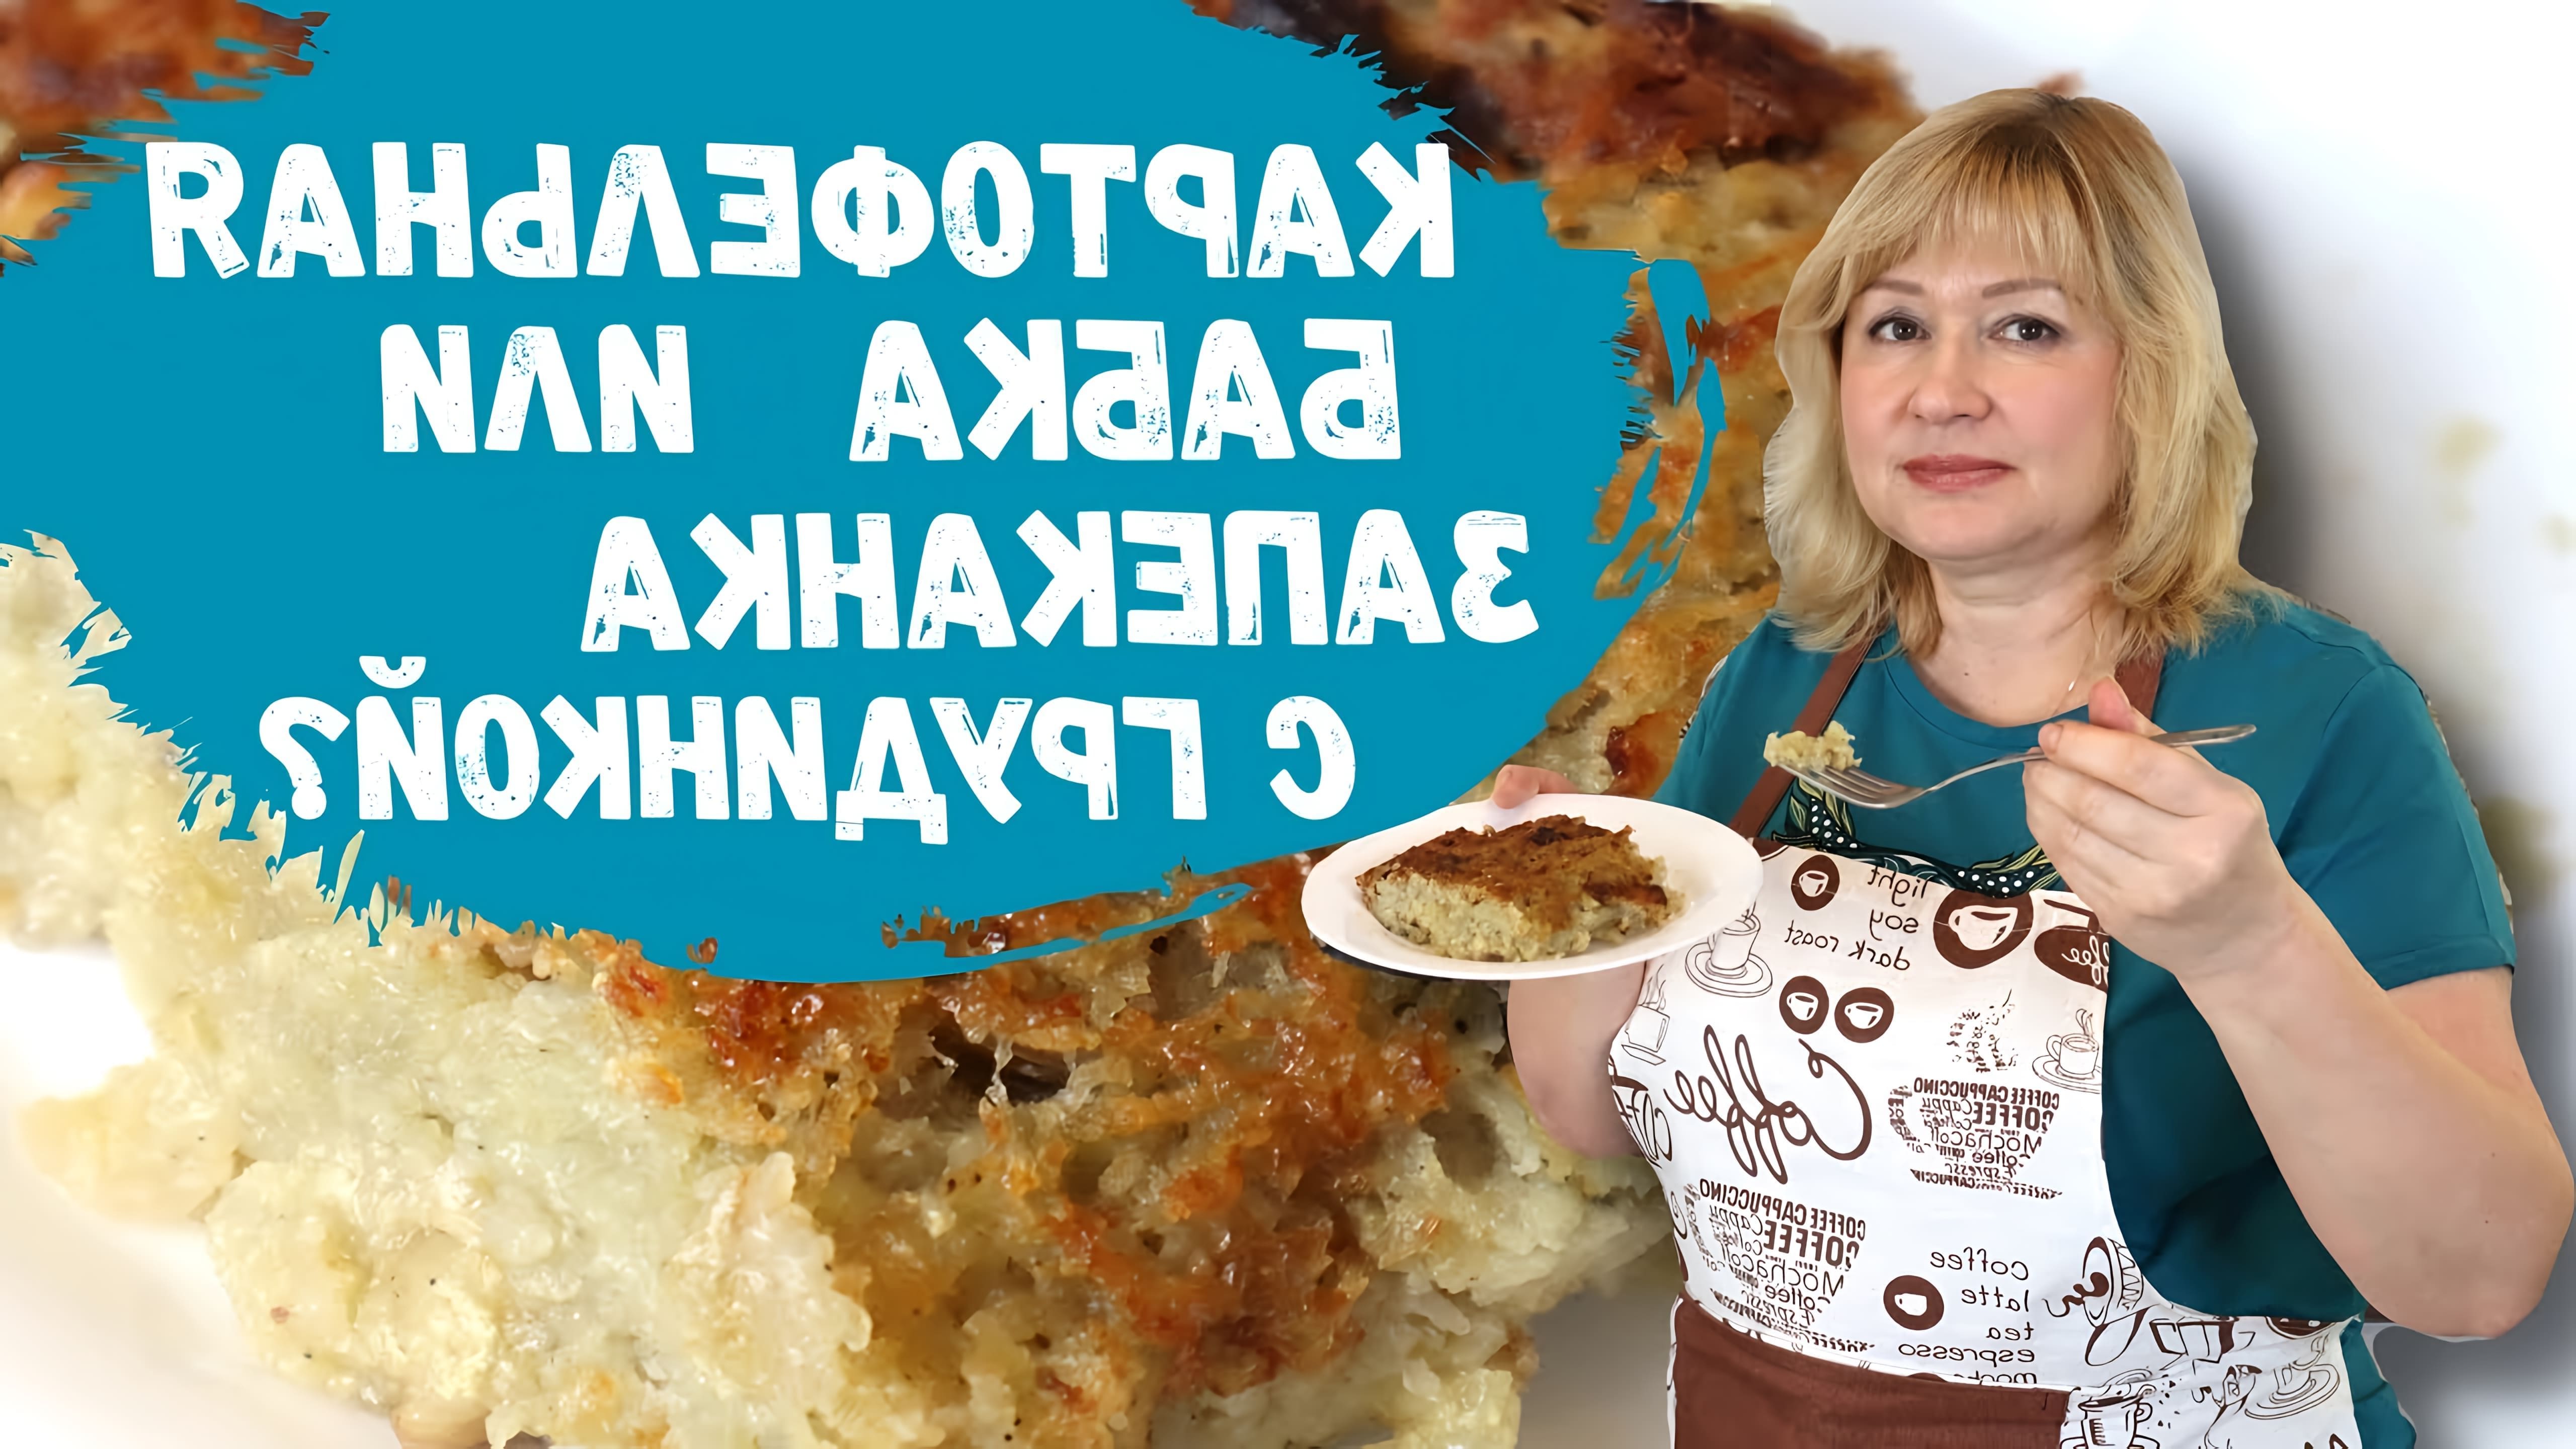 В этом видео демонстрируется процесс приготовления картофельной бабки - блюда национальной белорусской кухни